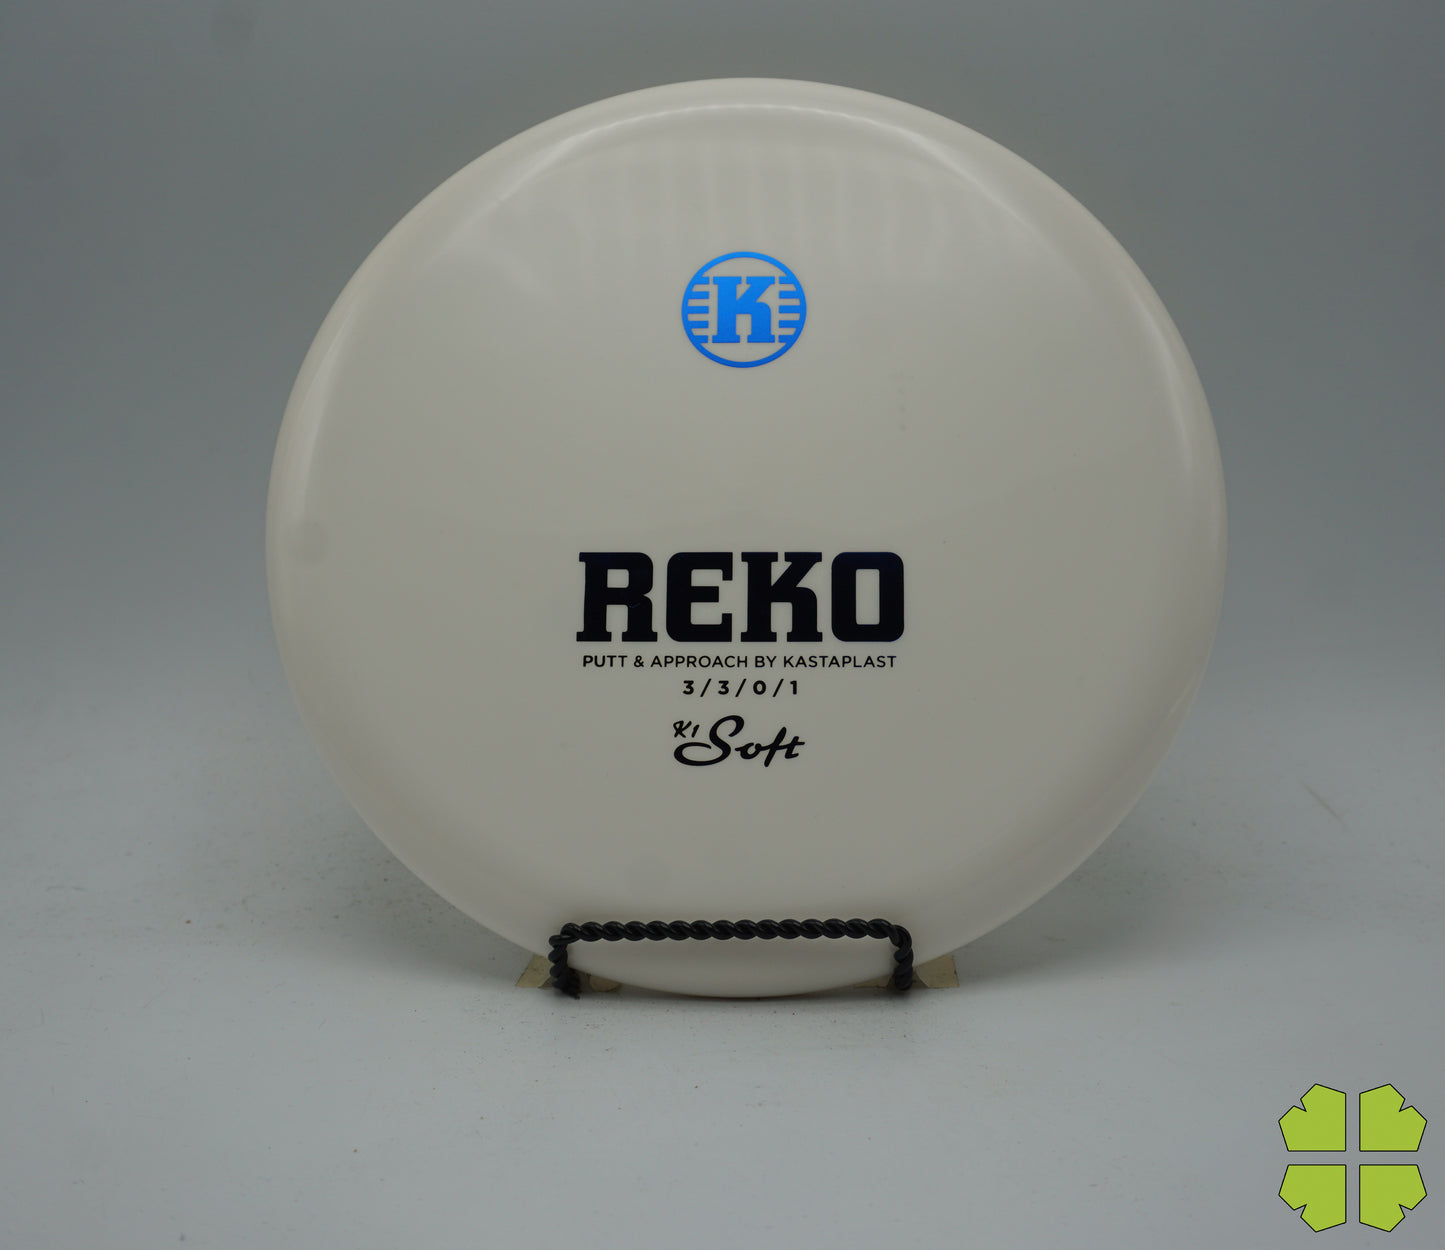 K1 Soft Reko